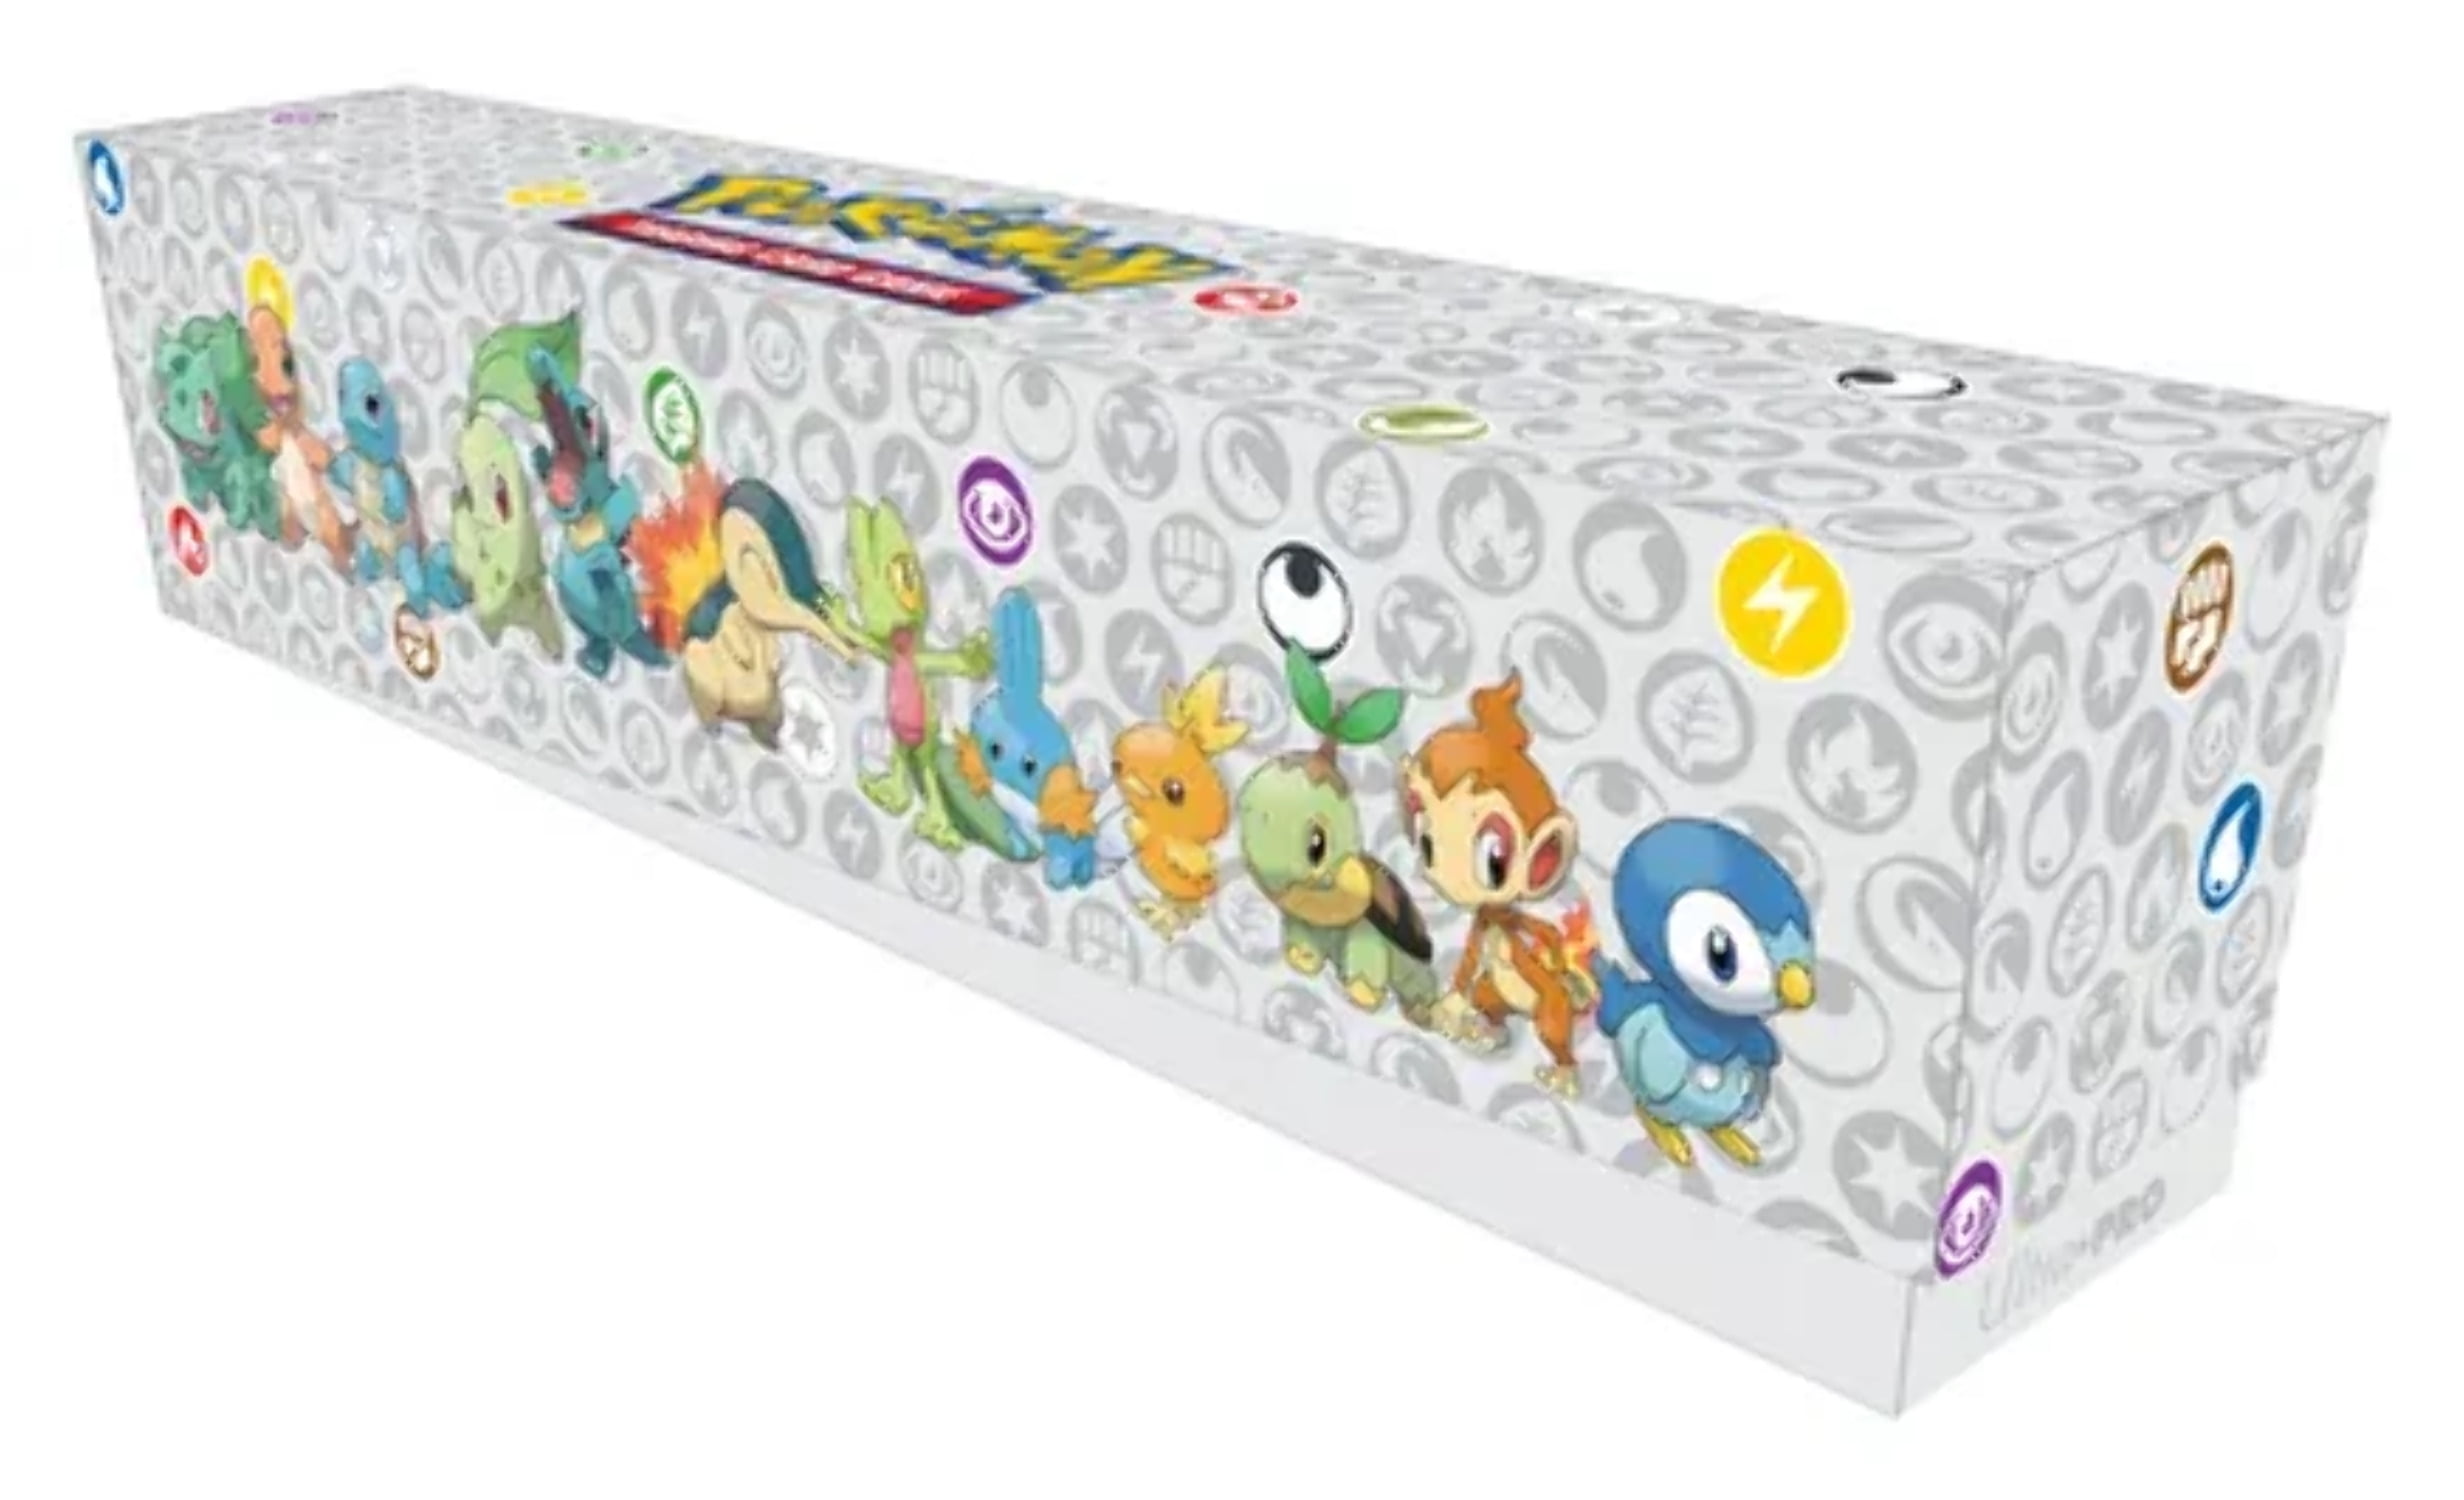 Box Deluxe : Box Surprise Pokémon - Boosters, Cartes Rares et Accessoi